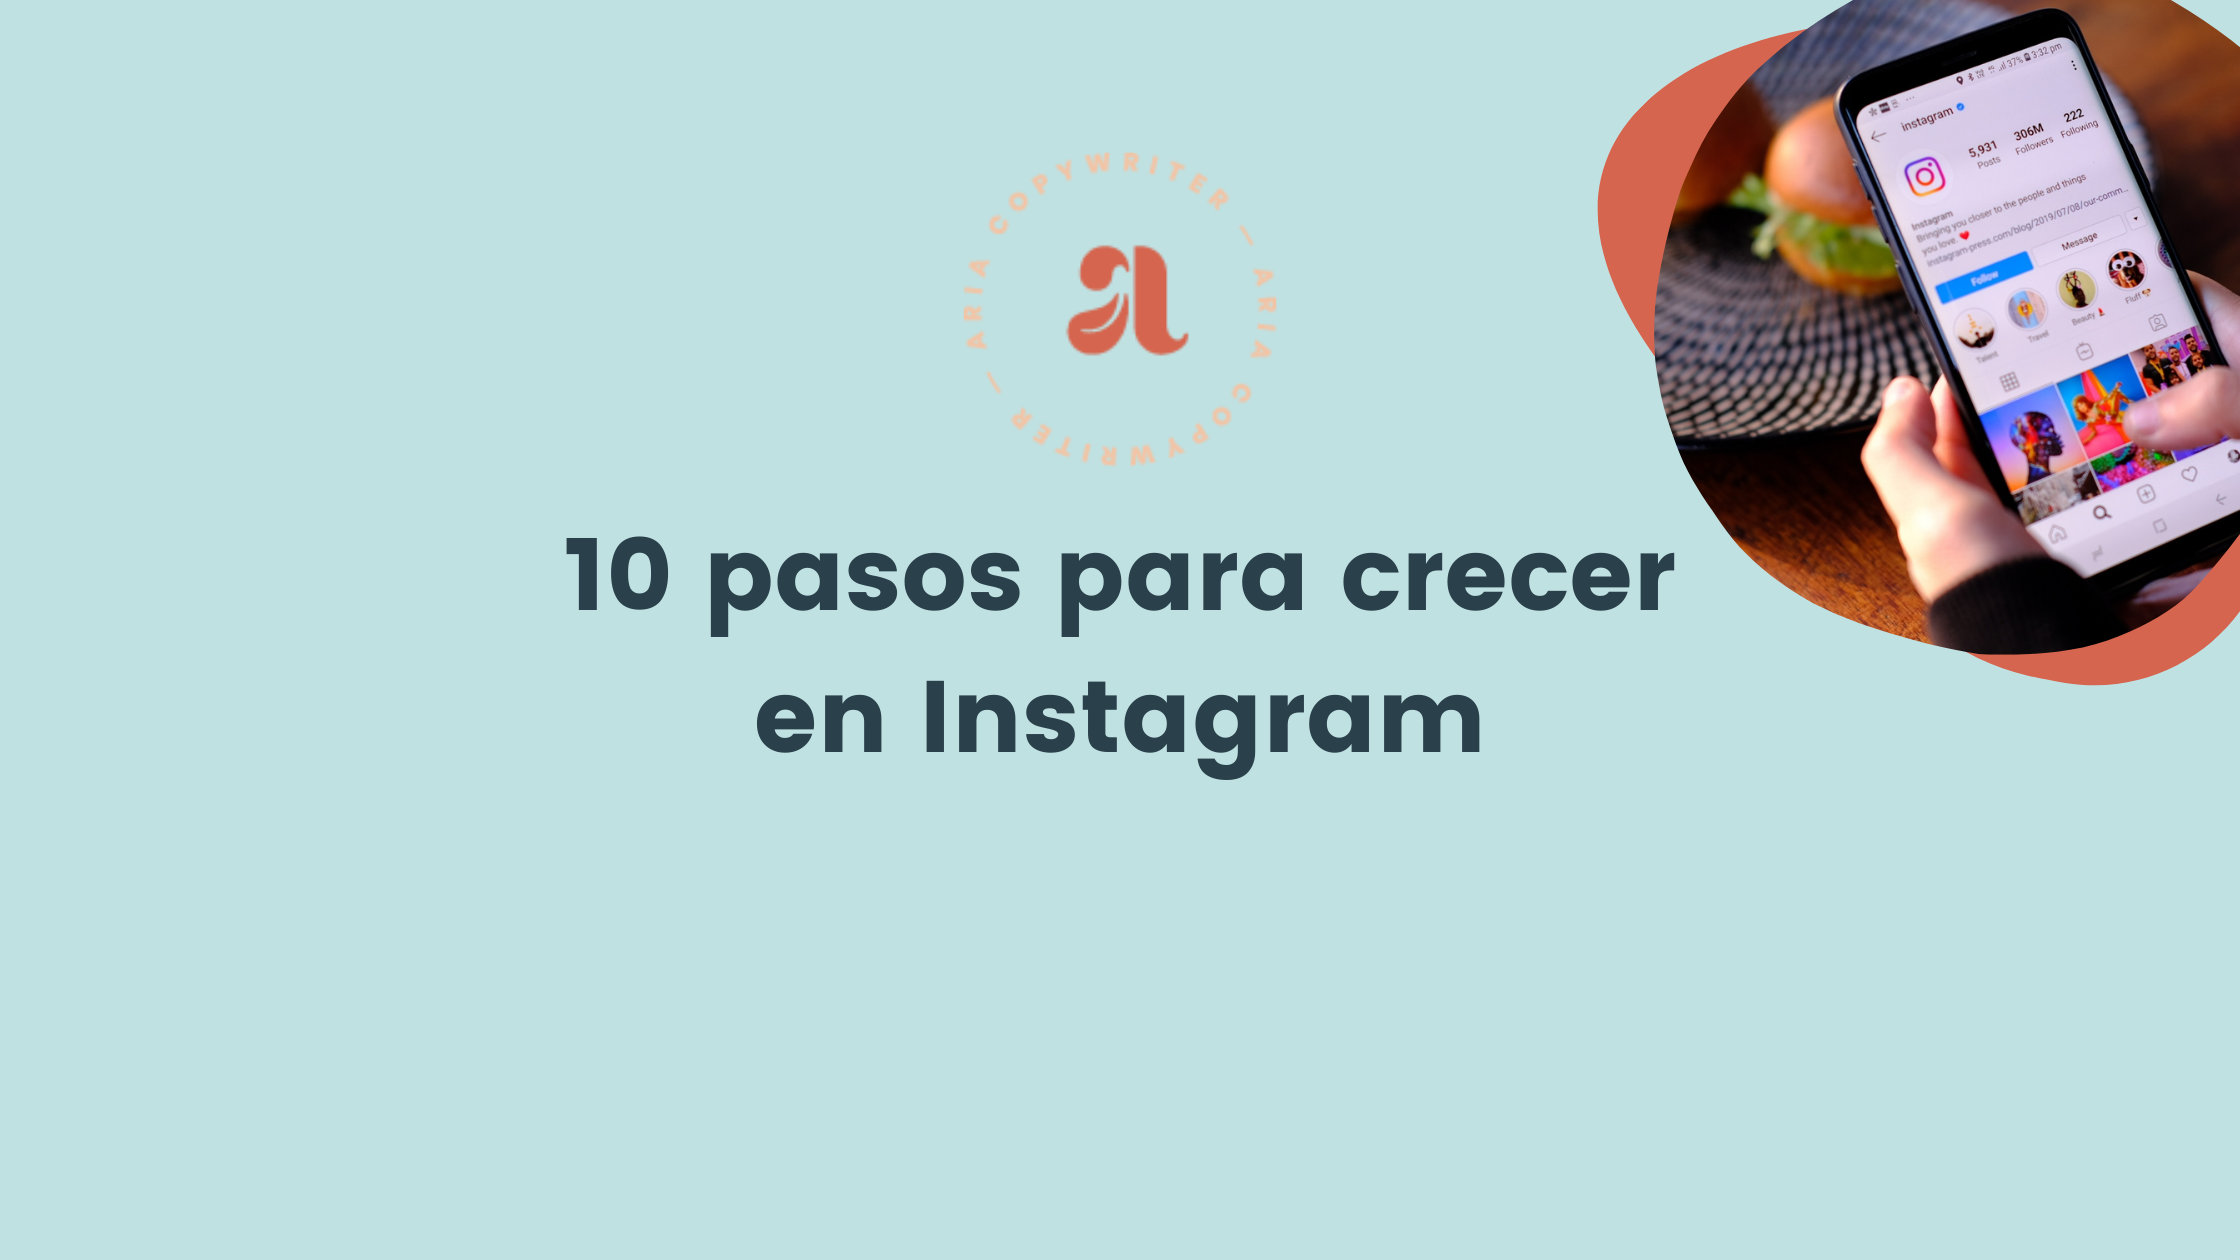 10 pasos para crecer en Instagram